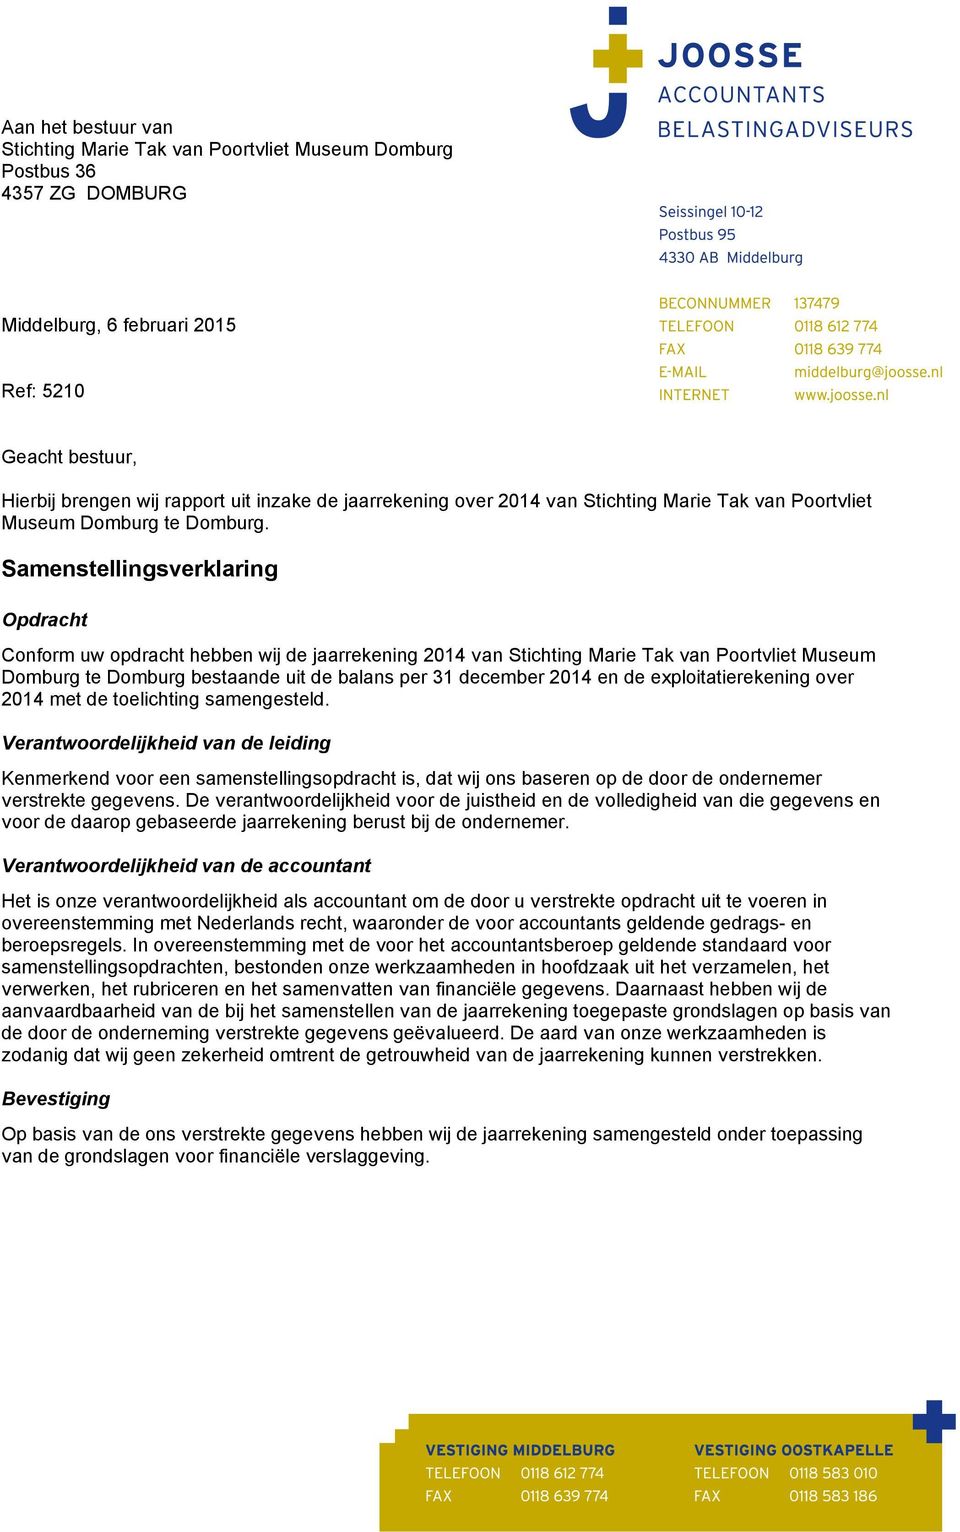 Samenstellingsverklaring Opdracht Conform uw opdracht hebben wij de jaarrekening 2014 van Stichting Marie Tak van Poortvliet Museum te bestaande uit de balans per 31 december 2014 en de